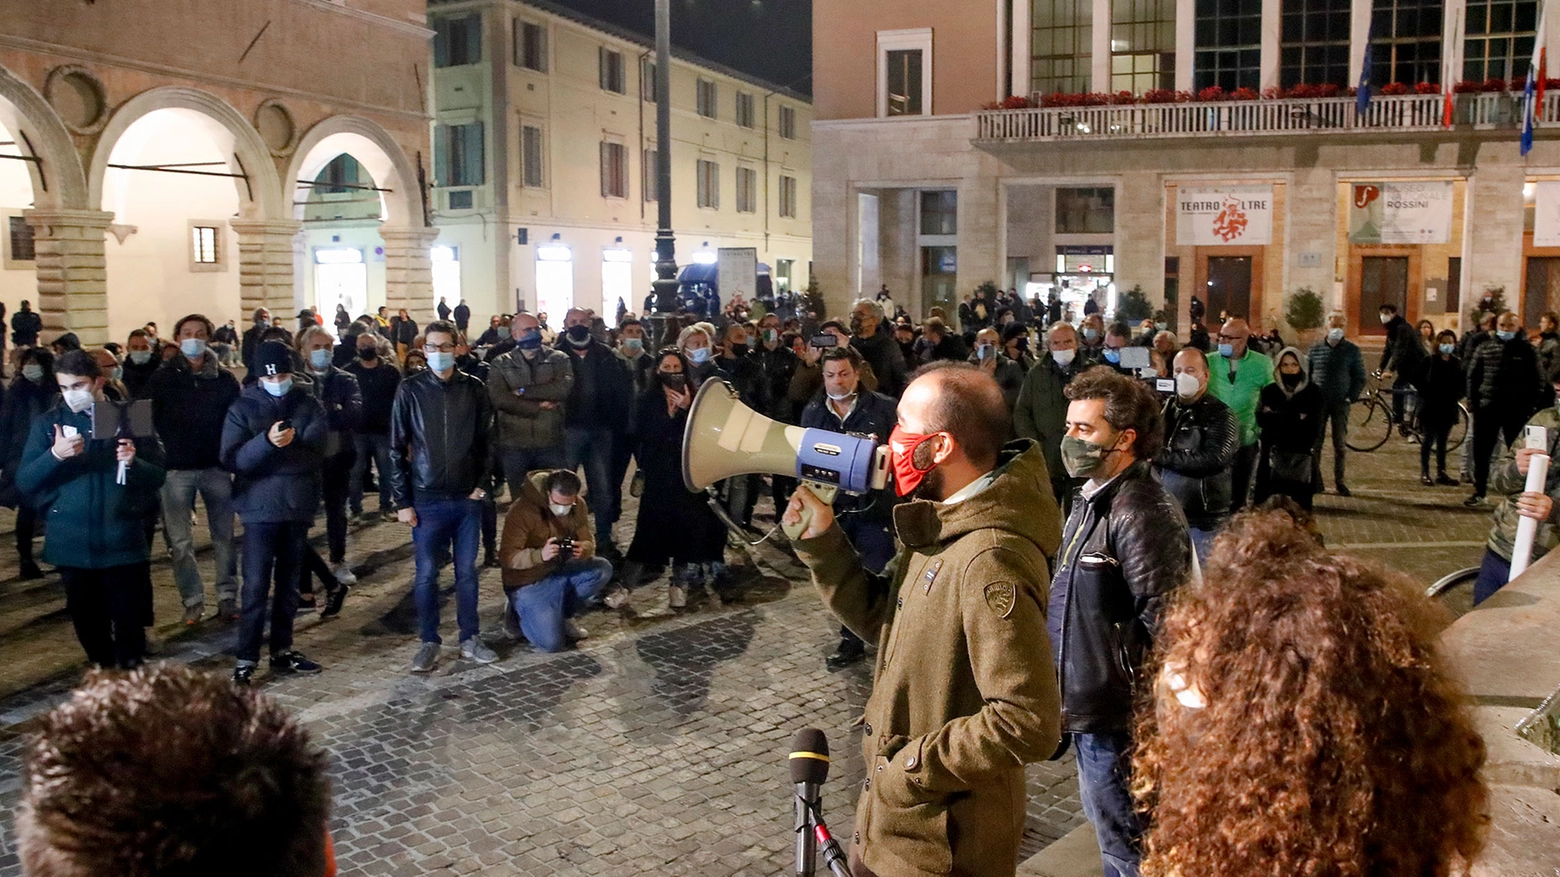 La protesta del 2 novembre a Pesaro, Umberto Carriera con l'altoparlante (Fotoprint)